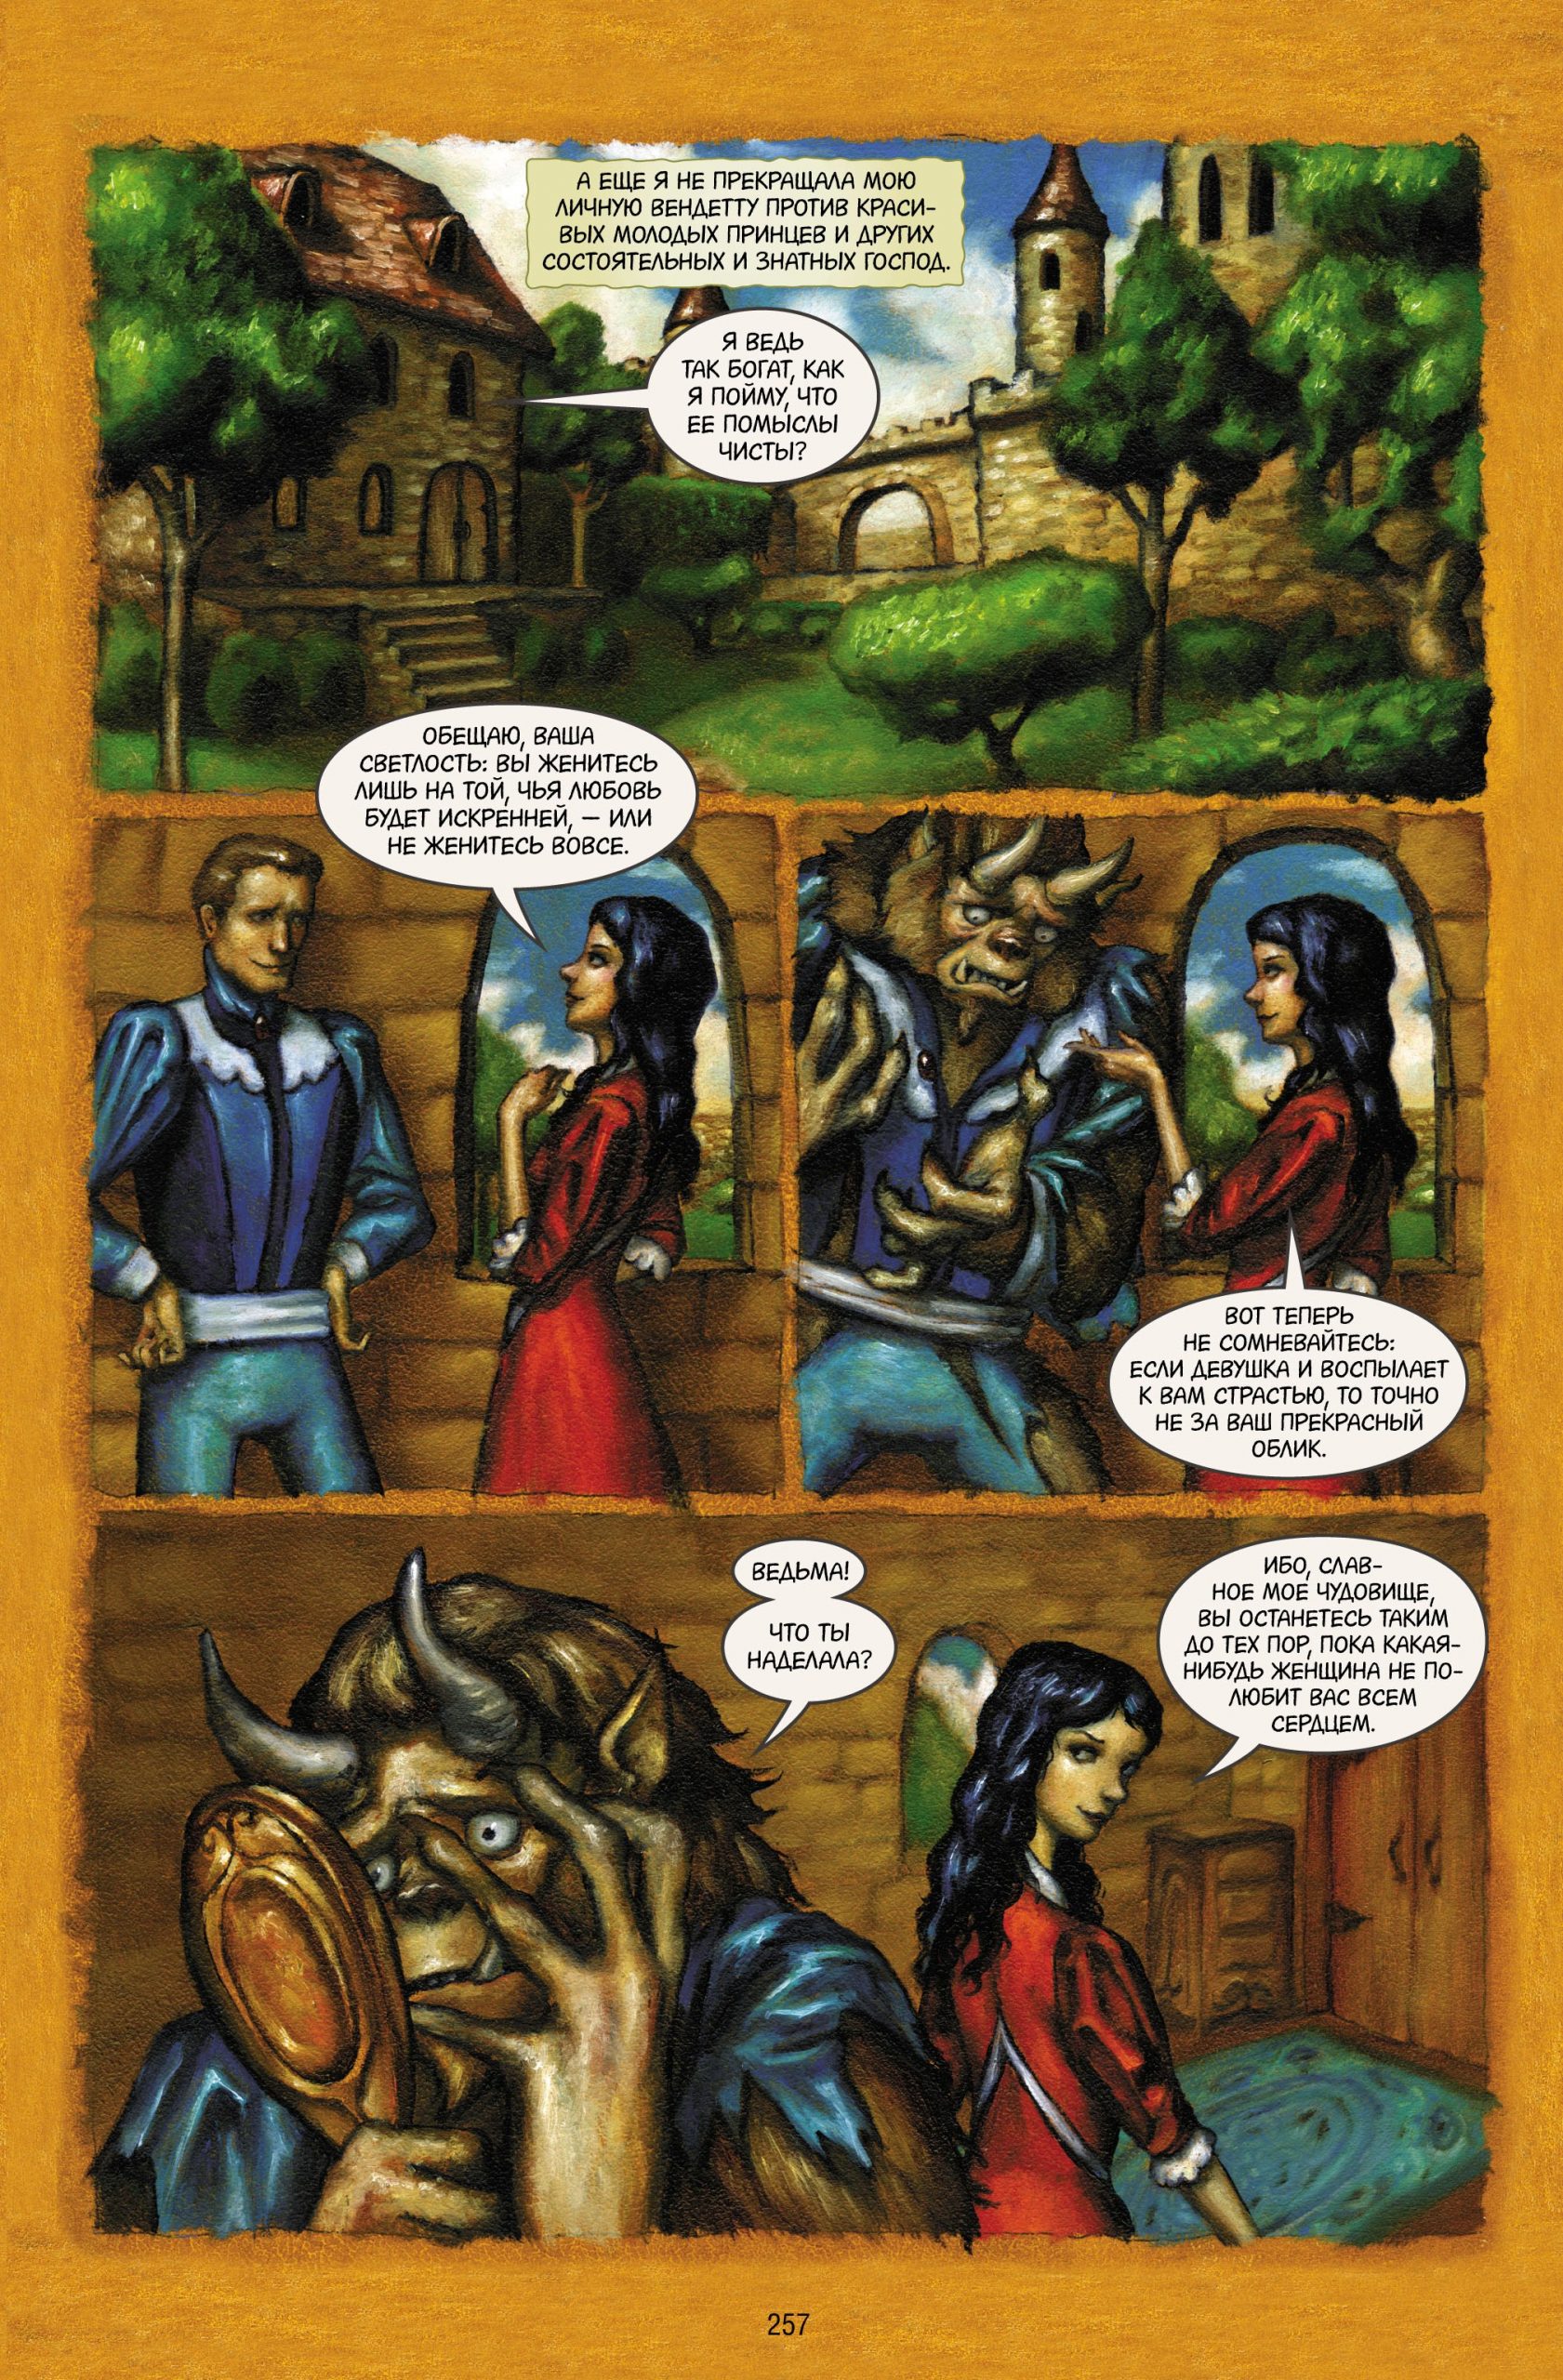 Читаем комикс «Сказки: Диаспора»: жестокие сказки о древней ведьме 5